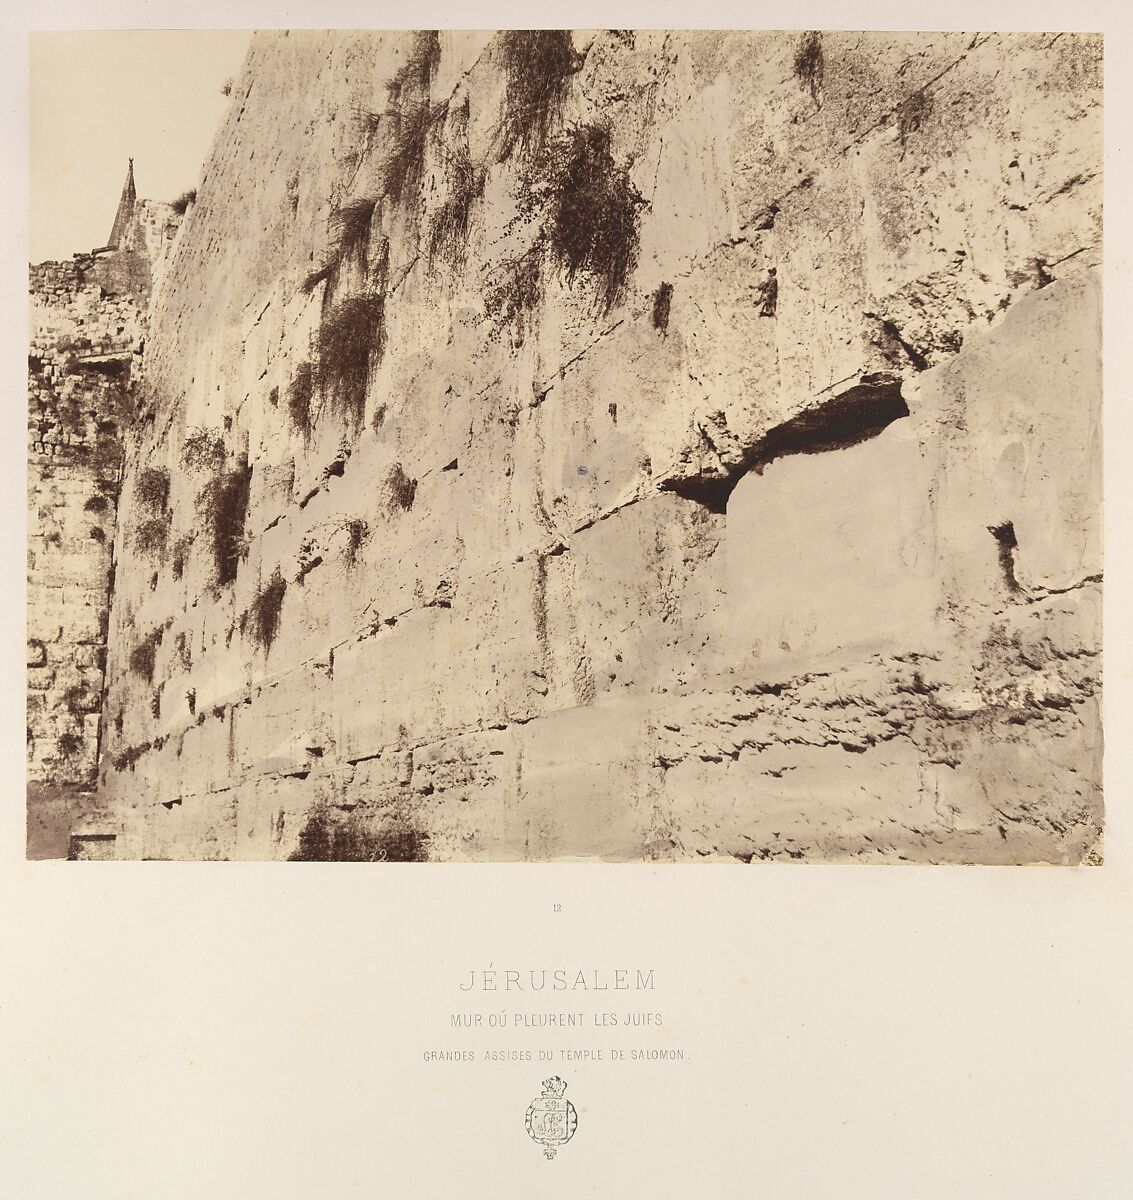 Jérusalem. Mur oú pleurent les juifs. Grandes Assises du Temple de Salomon, Louis de Clercq (French, 1837–1901), Albumen silver print from paper negative 